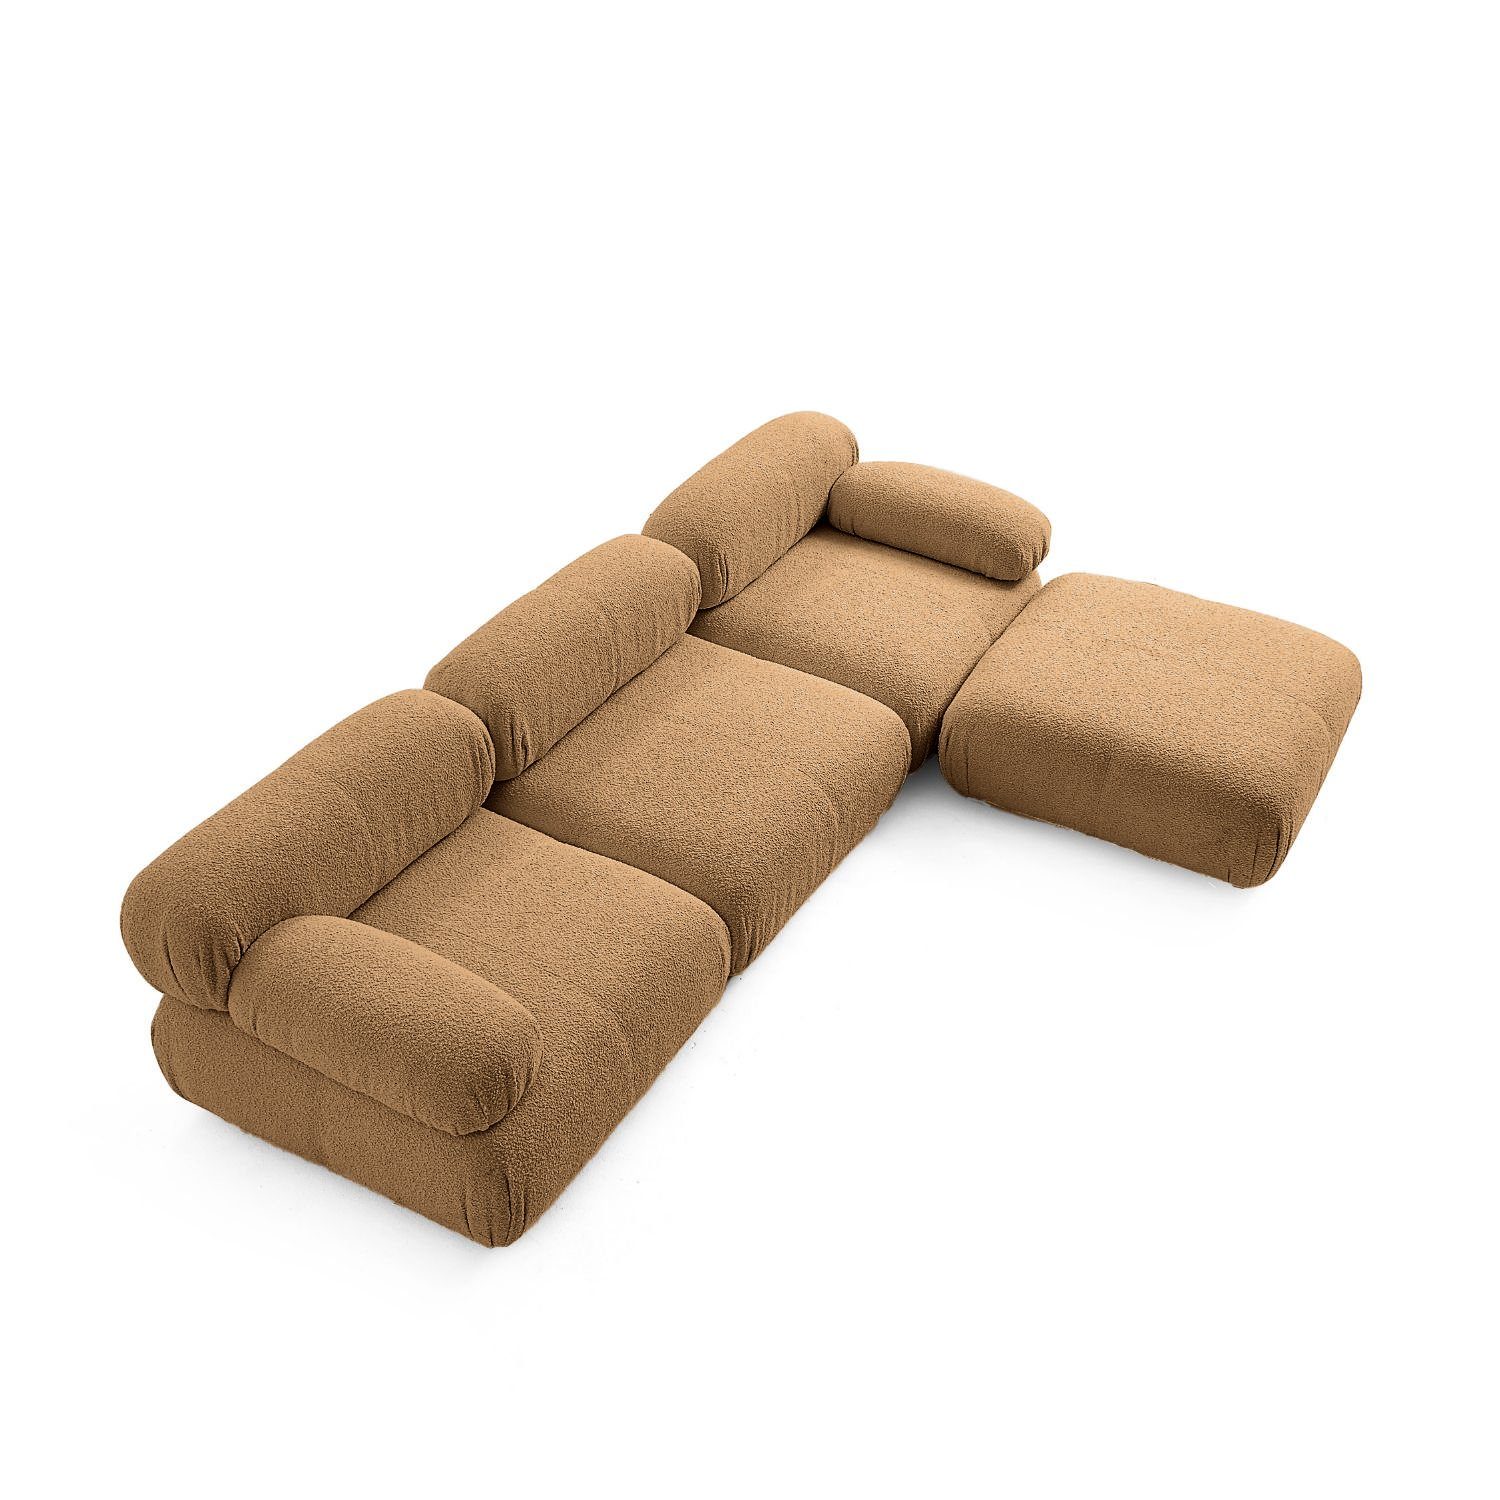 neueste Braun-Lieferung Preis Aufbau me im Generation enthalten! und Knuffiges Sofa aus Komfortschaum Touch Sitzmöbel